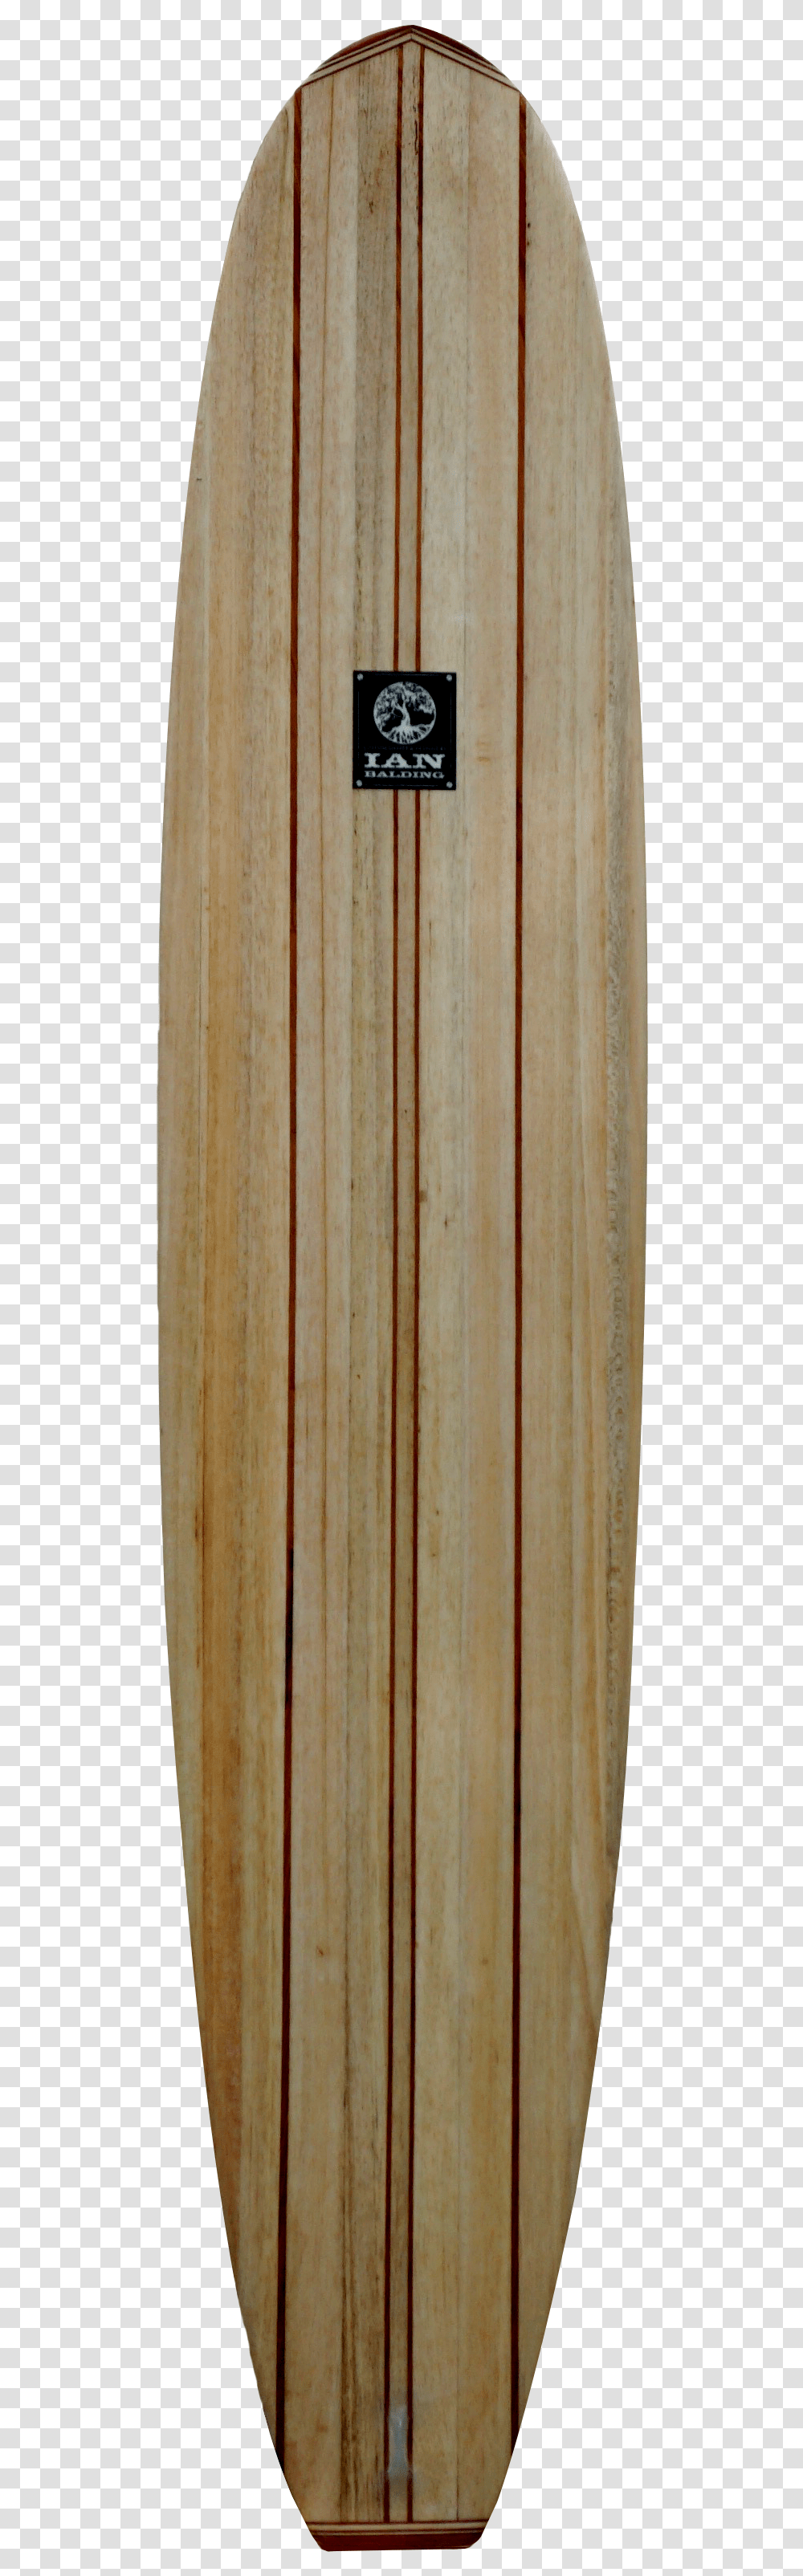 Skateboard Deck, Tabletop, Furniture, Wood, Plywood Transparent Png